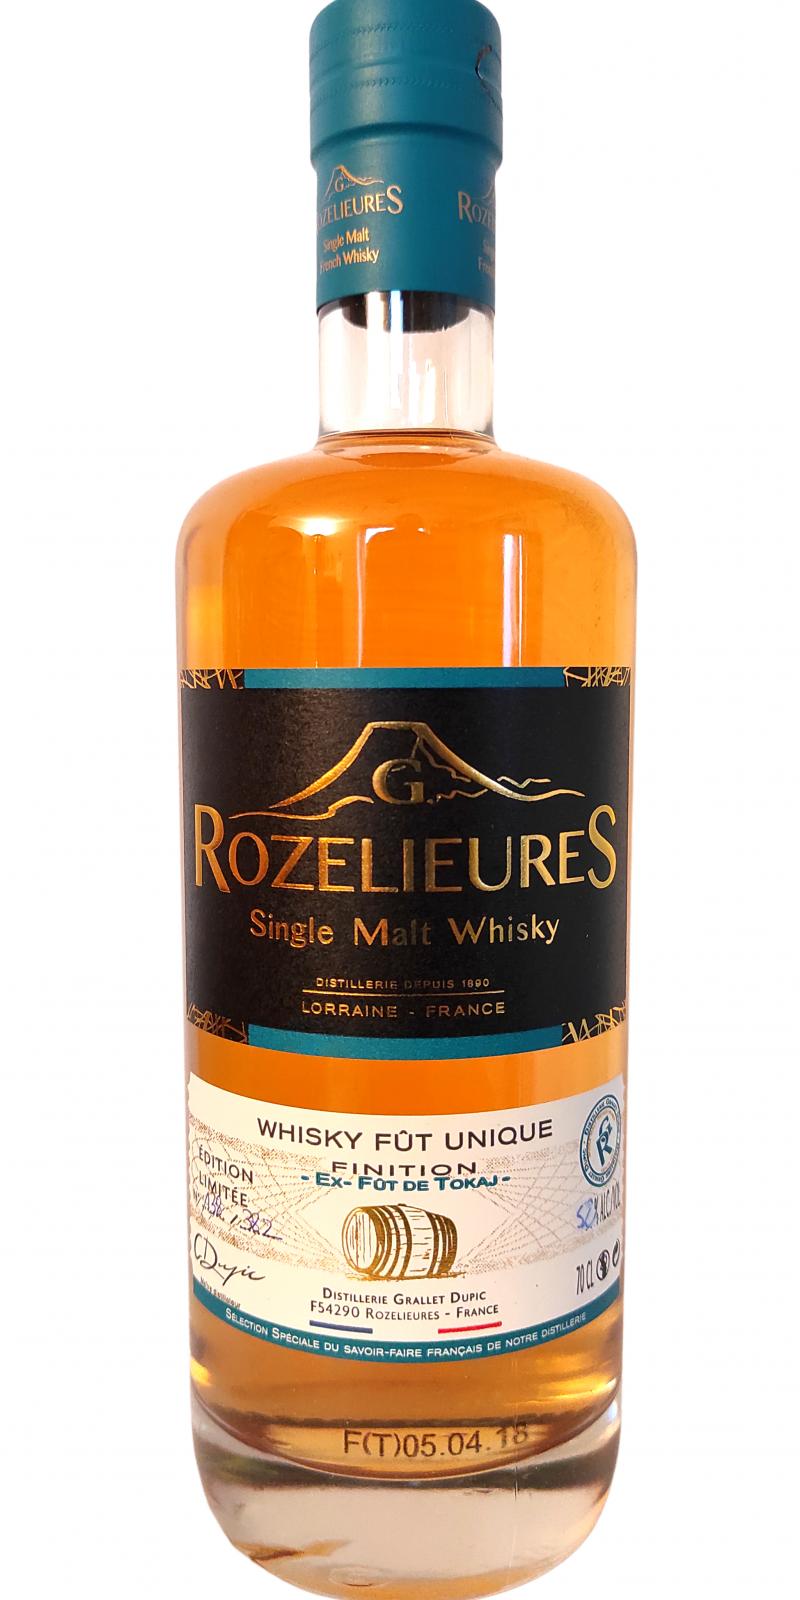 G. Rozelieures Whisky fut unique 52% 700ml